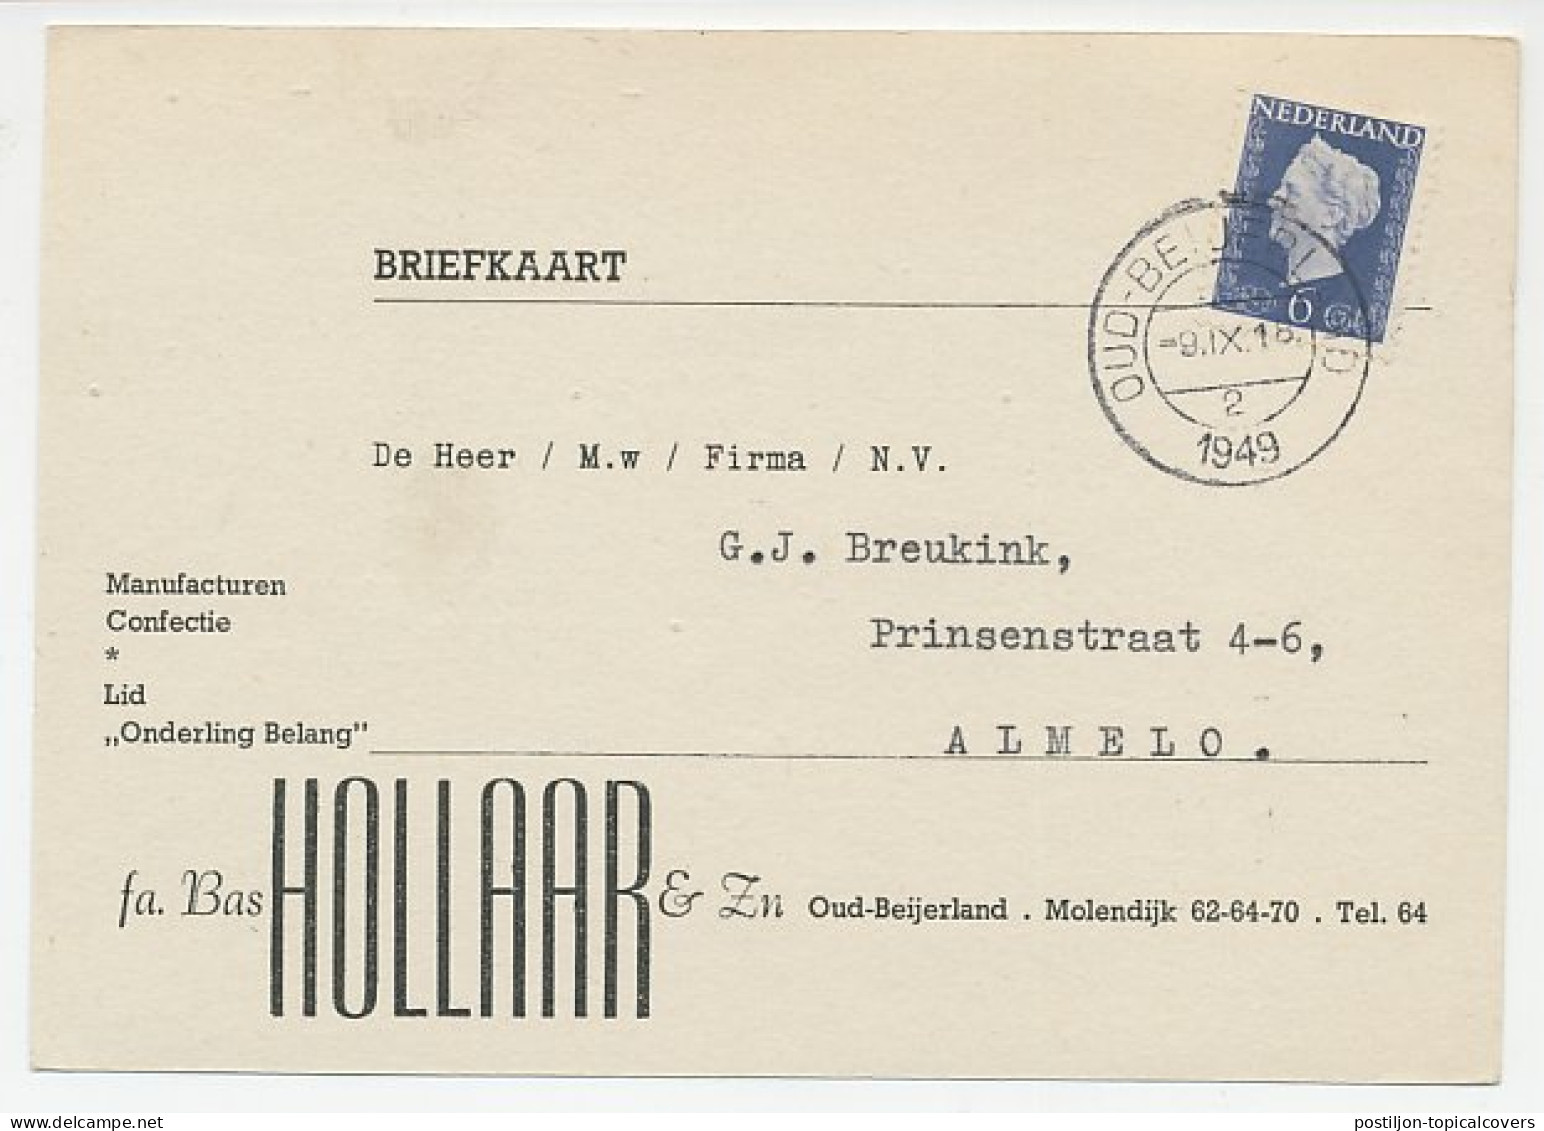 Firma Briefkaart Oud Beijerland 1949 - Manufacturen / Confectie - Unclassified